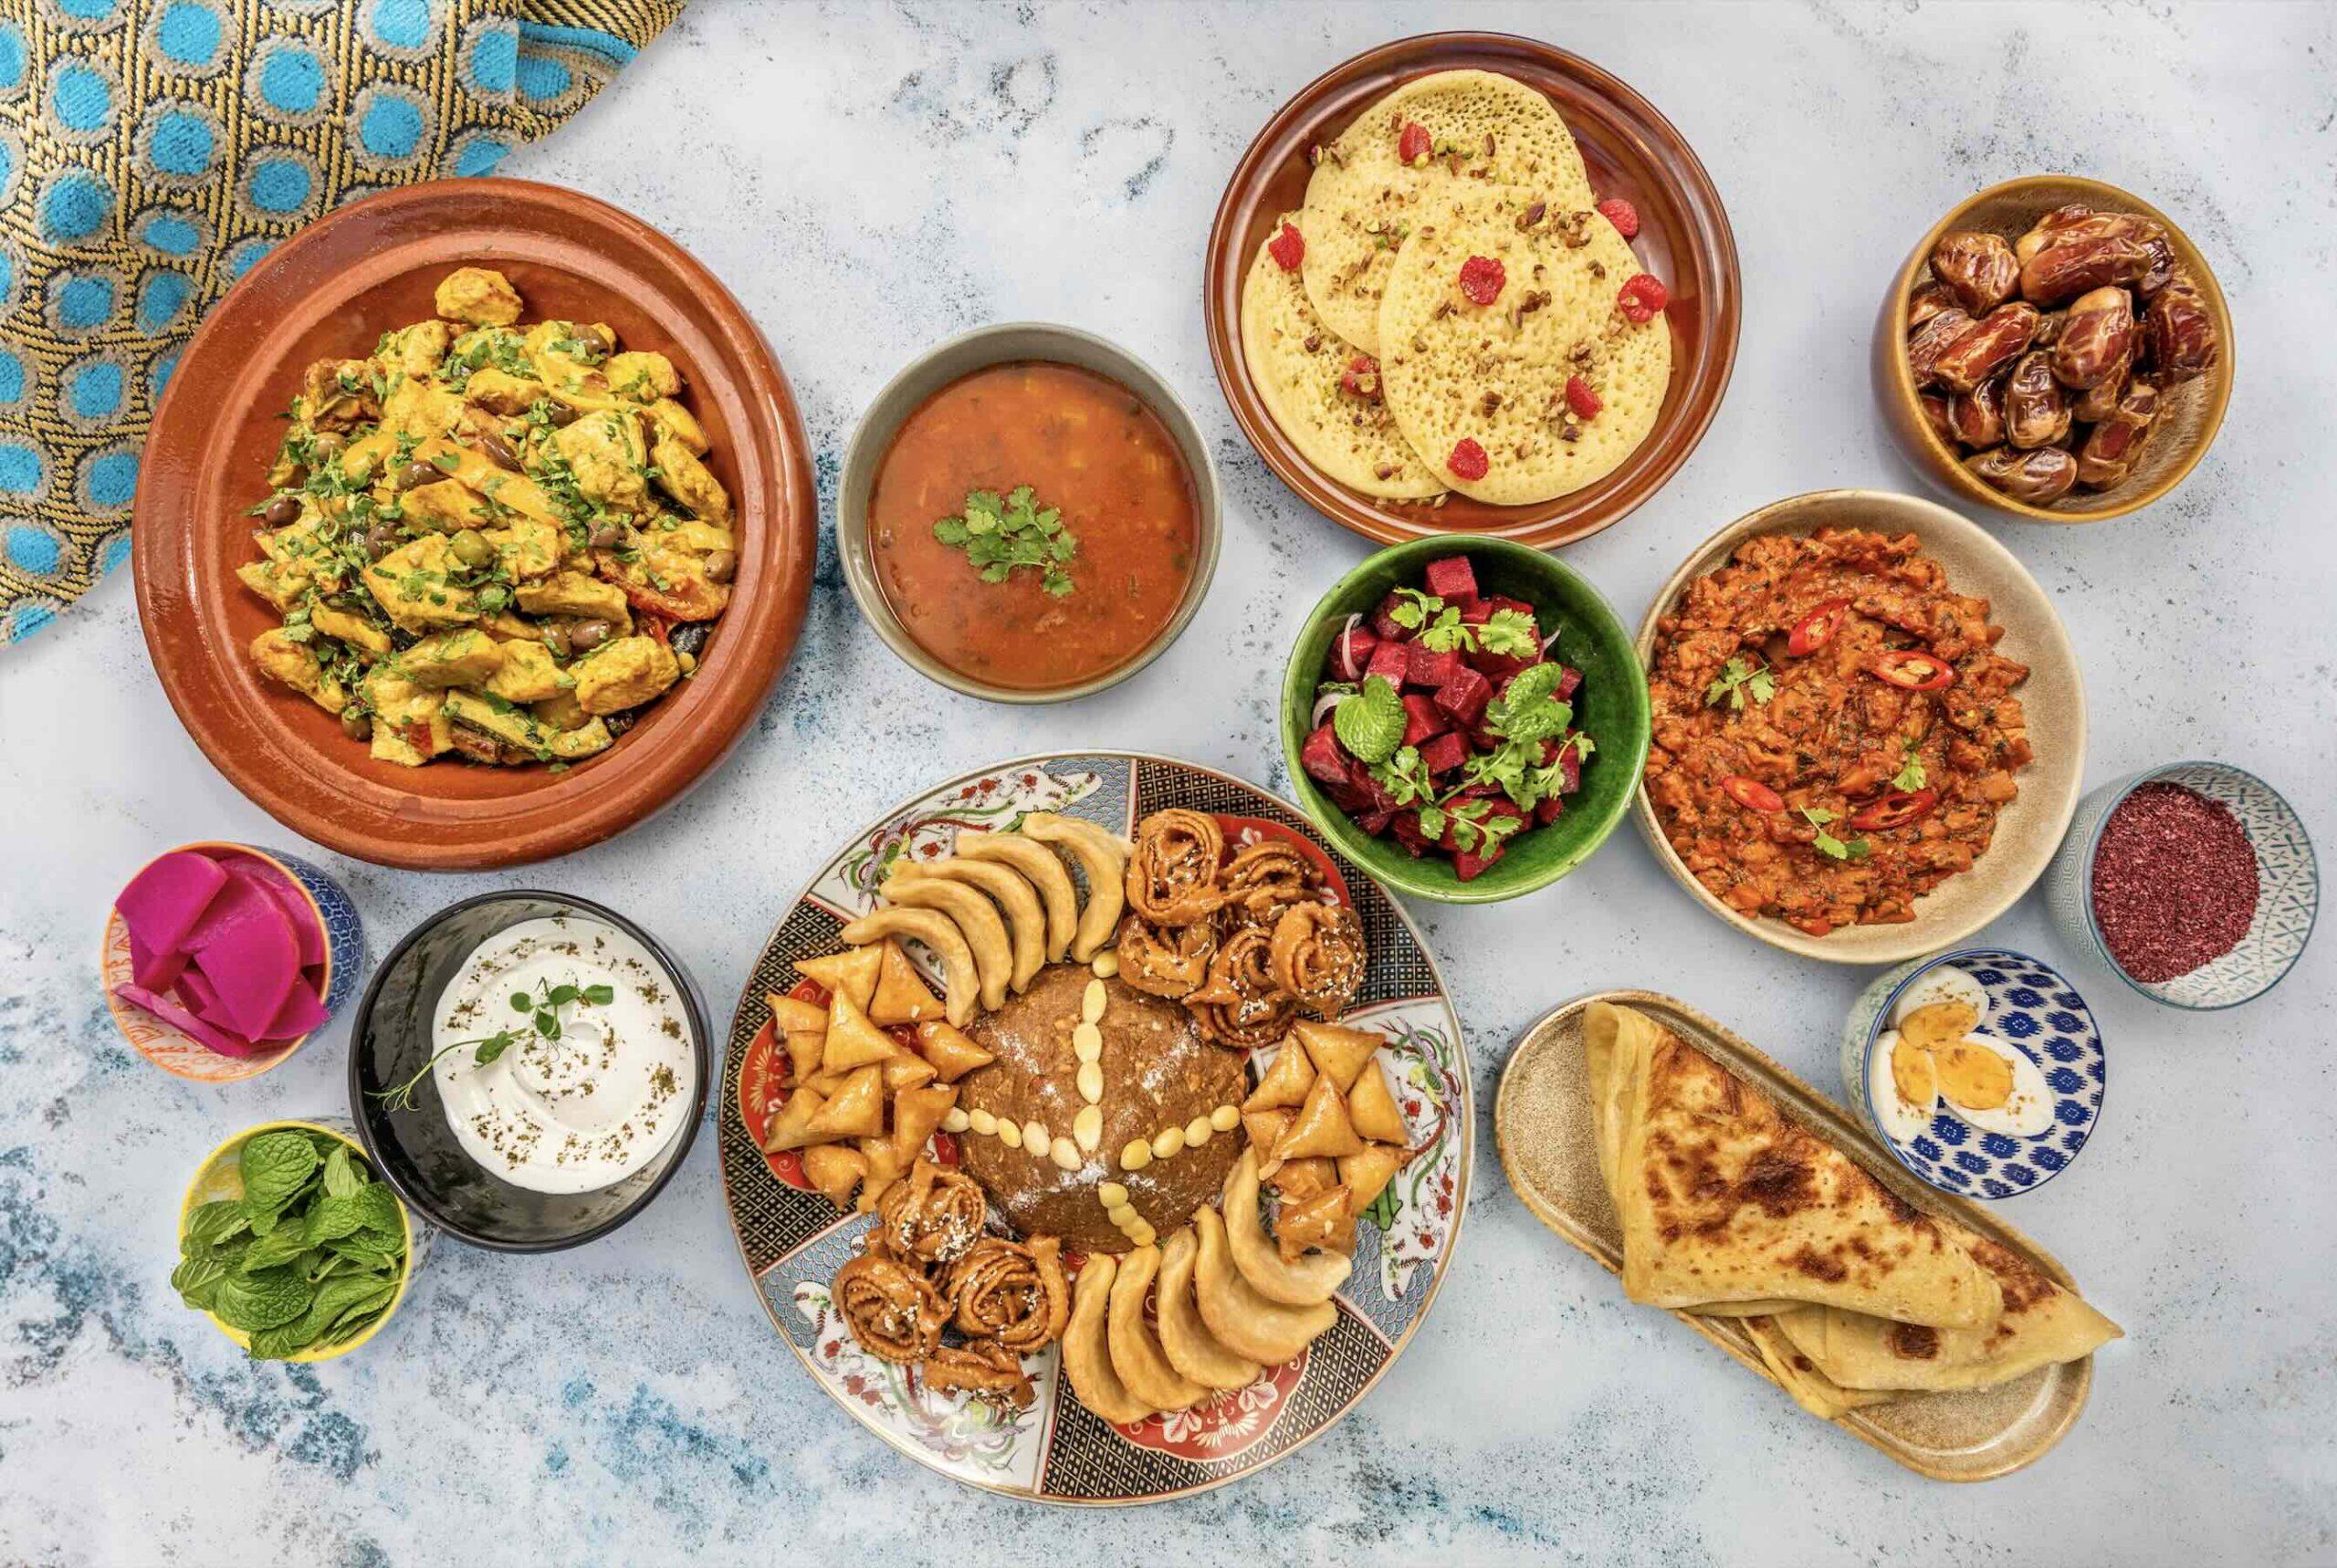 Indulge in authentic Moroccan cuisine this Ramadan at Novotel Dubai Al Barsha